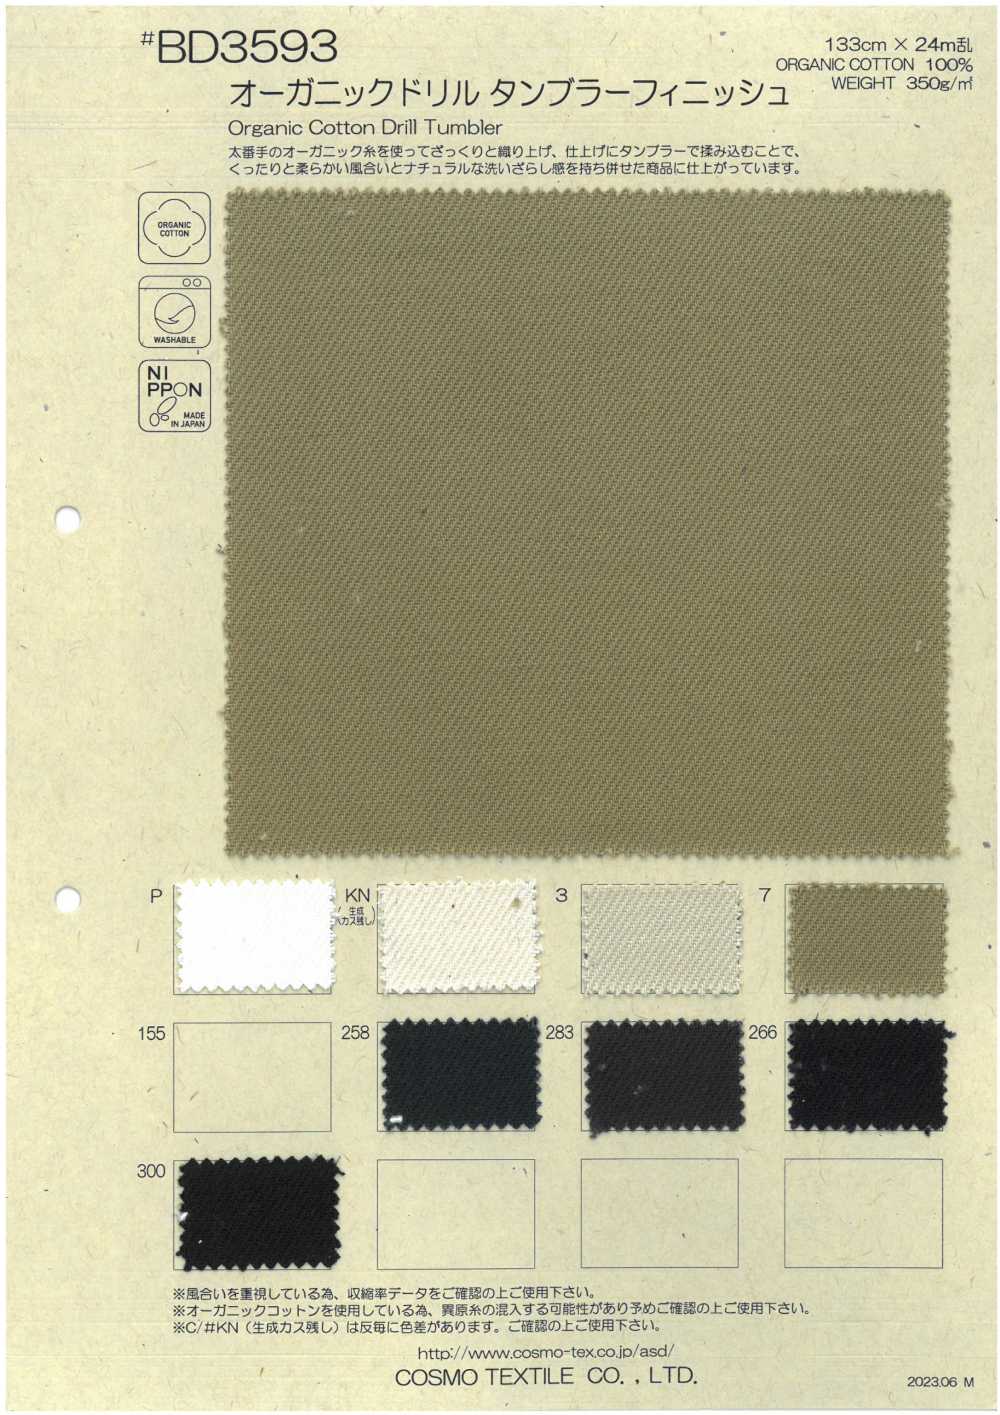 BD3593 7/-Tablón Perforado Orgánico[Fabrica Textil] COSMO TEXTILE